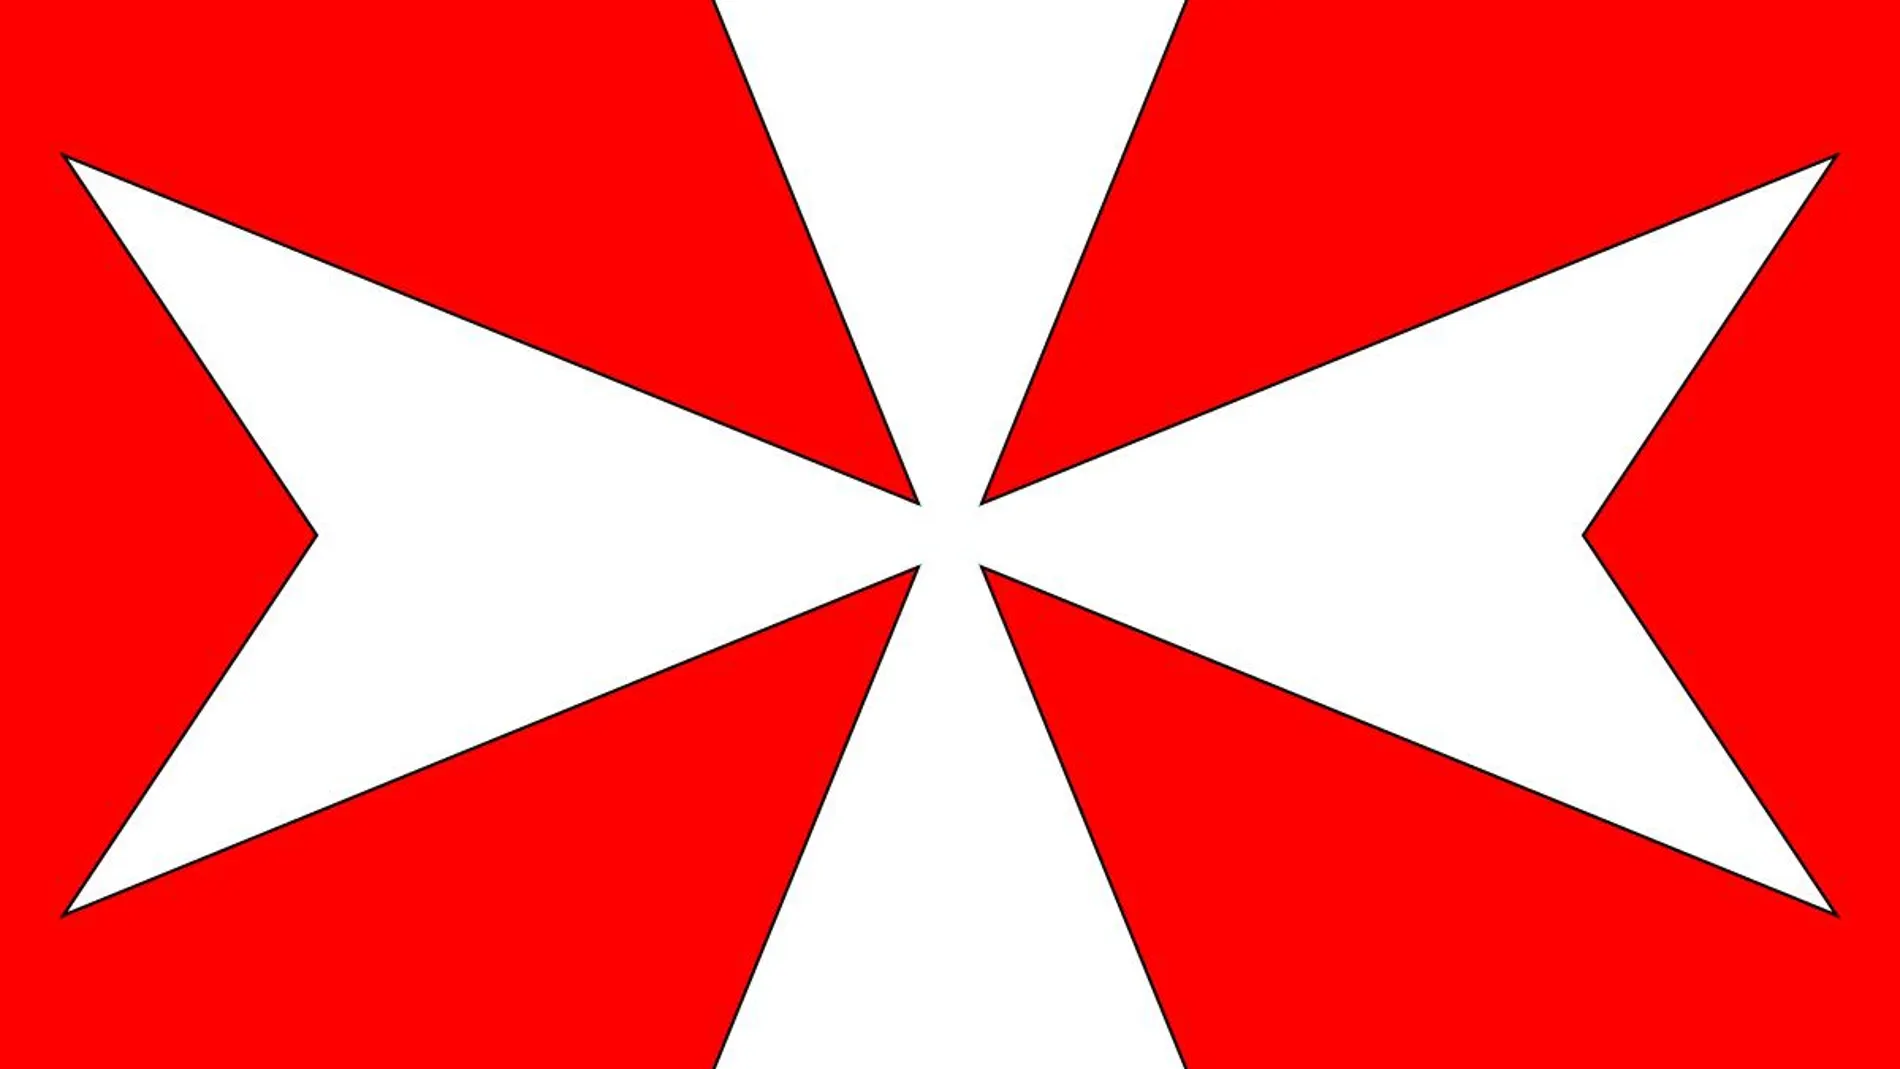 La Cruz de Malta o Cruz de ocho puntas